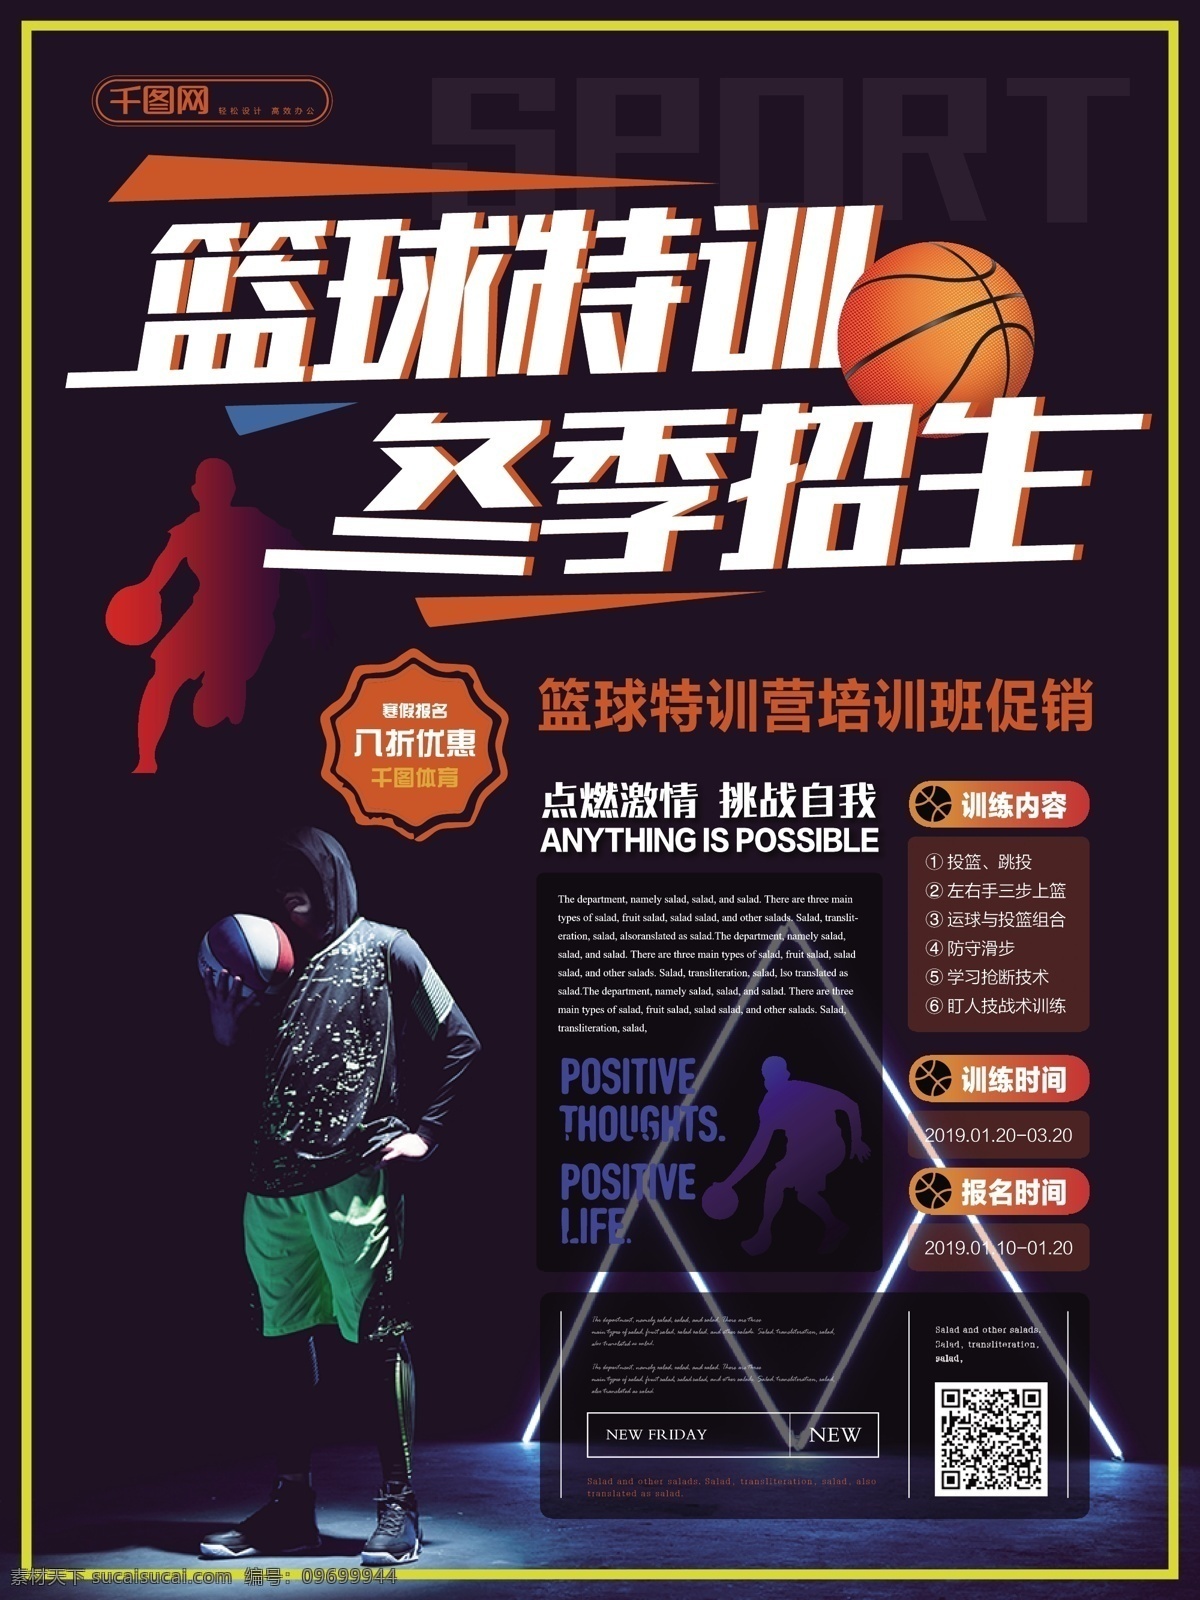 简约 活力 篮球 特 训 营 冬季 促销 海报 简约风 酷 篮球特训 冬季招生 宣传